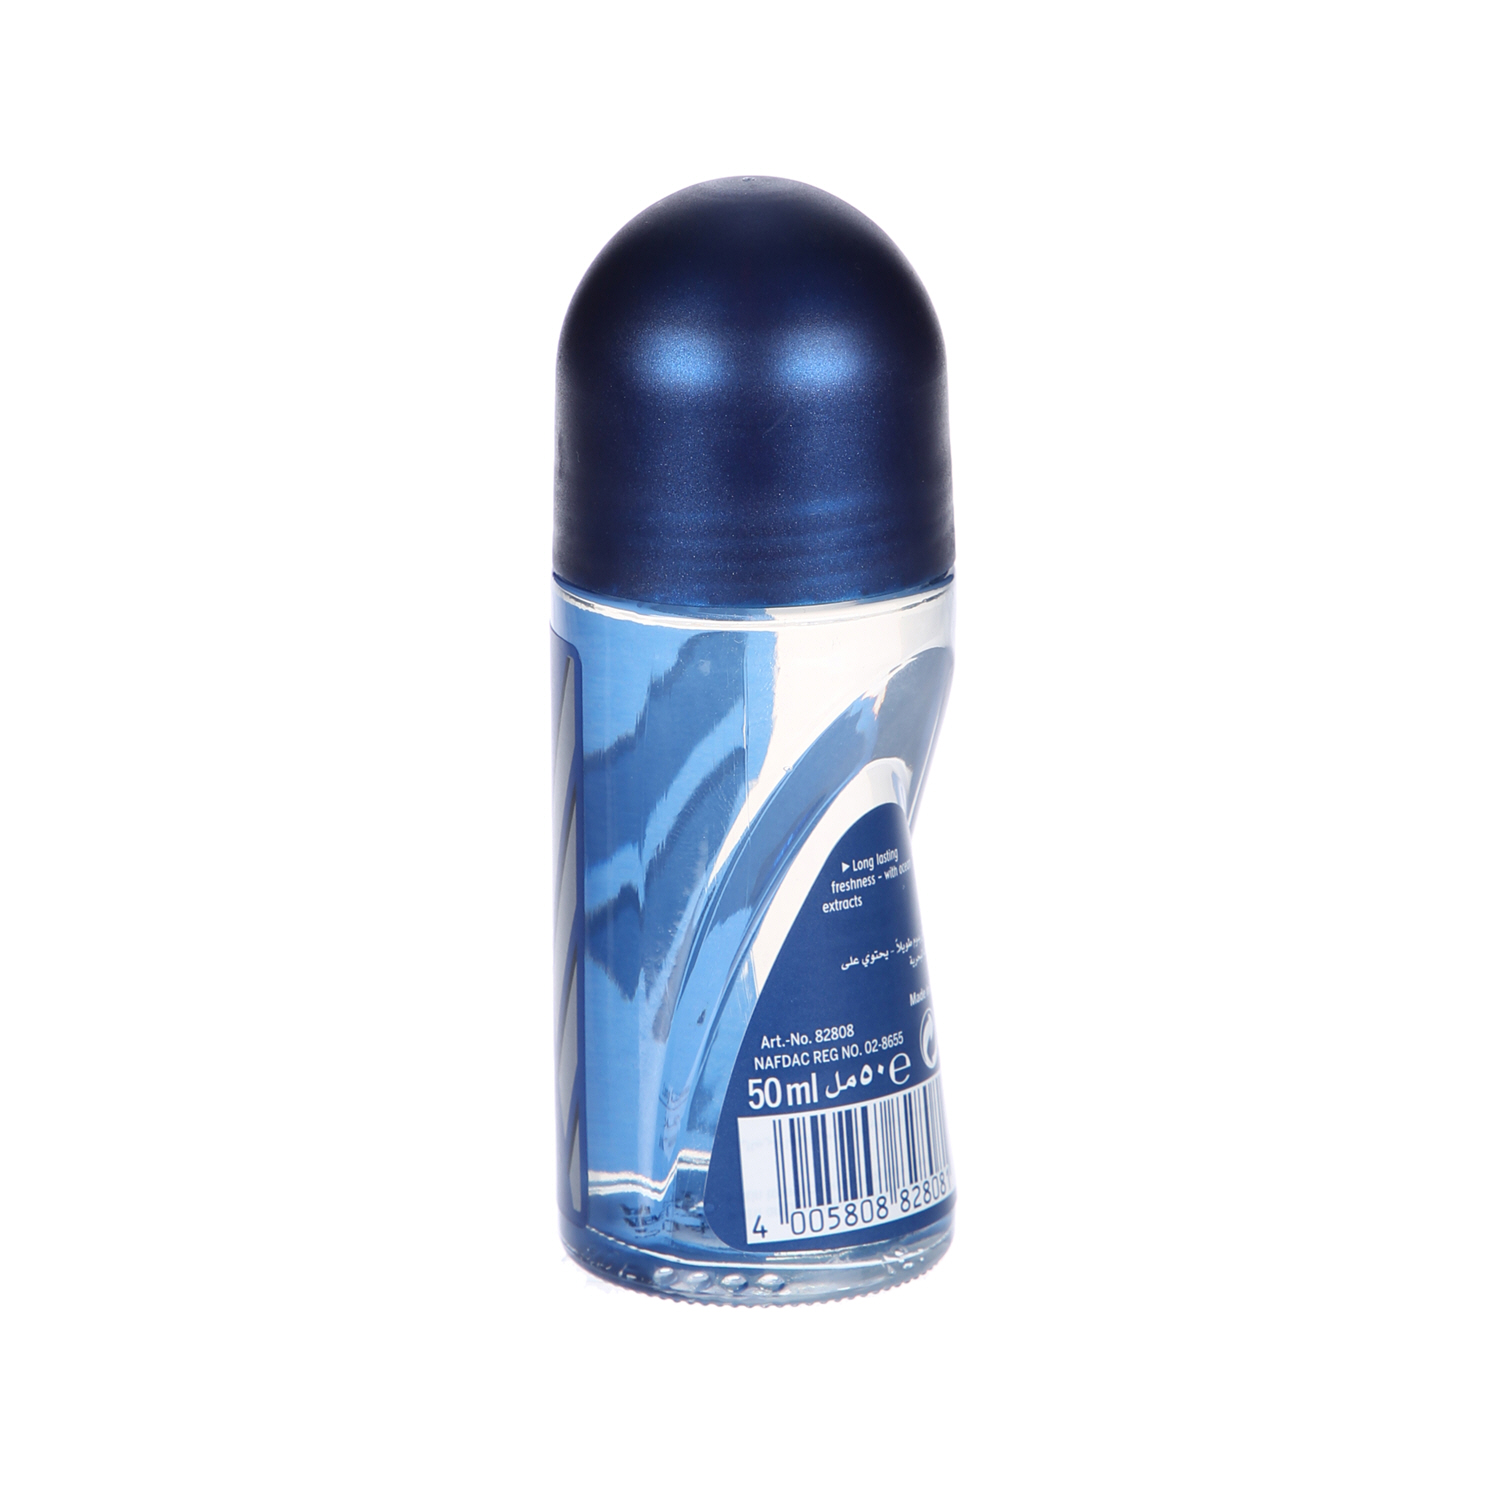 Nivea Men Antiperspirant Roll-on for Men Fresh Active Fresh Scent 50 ml